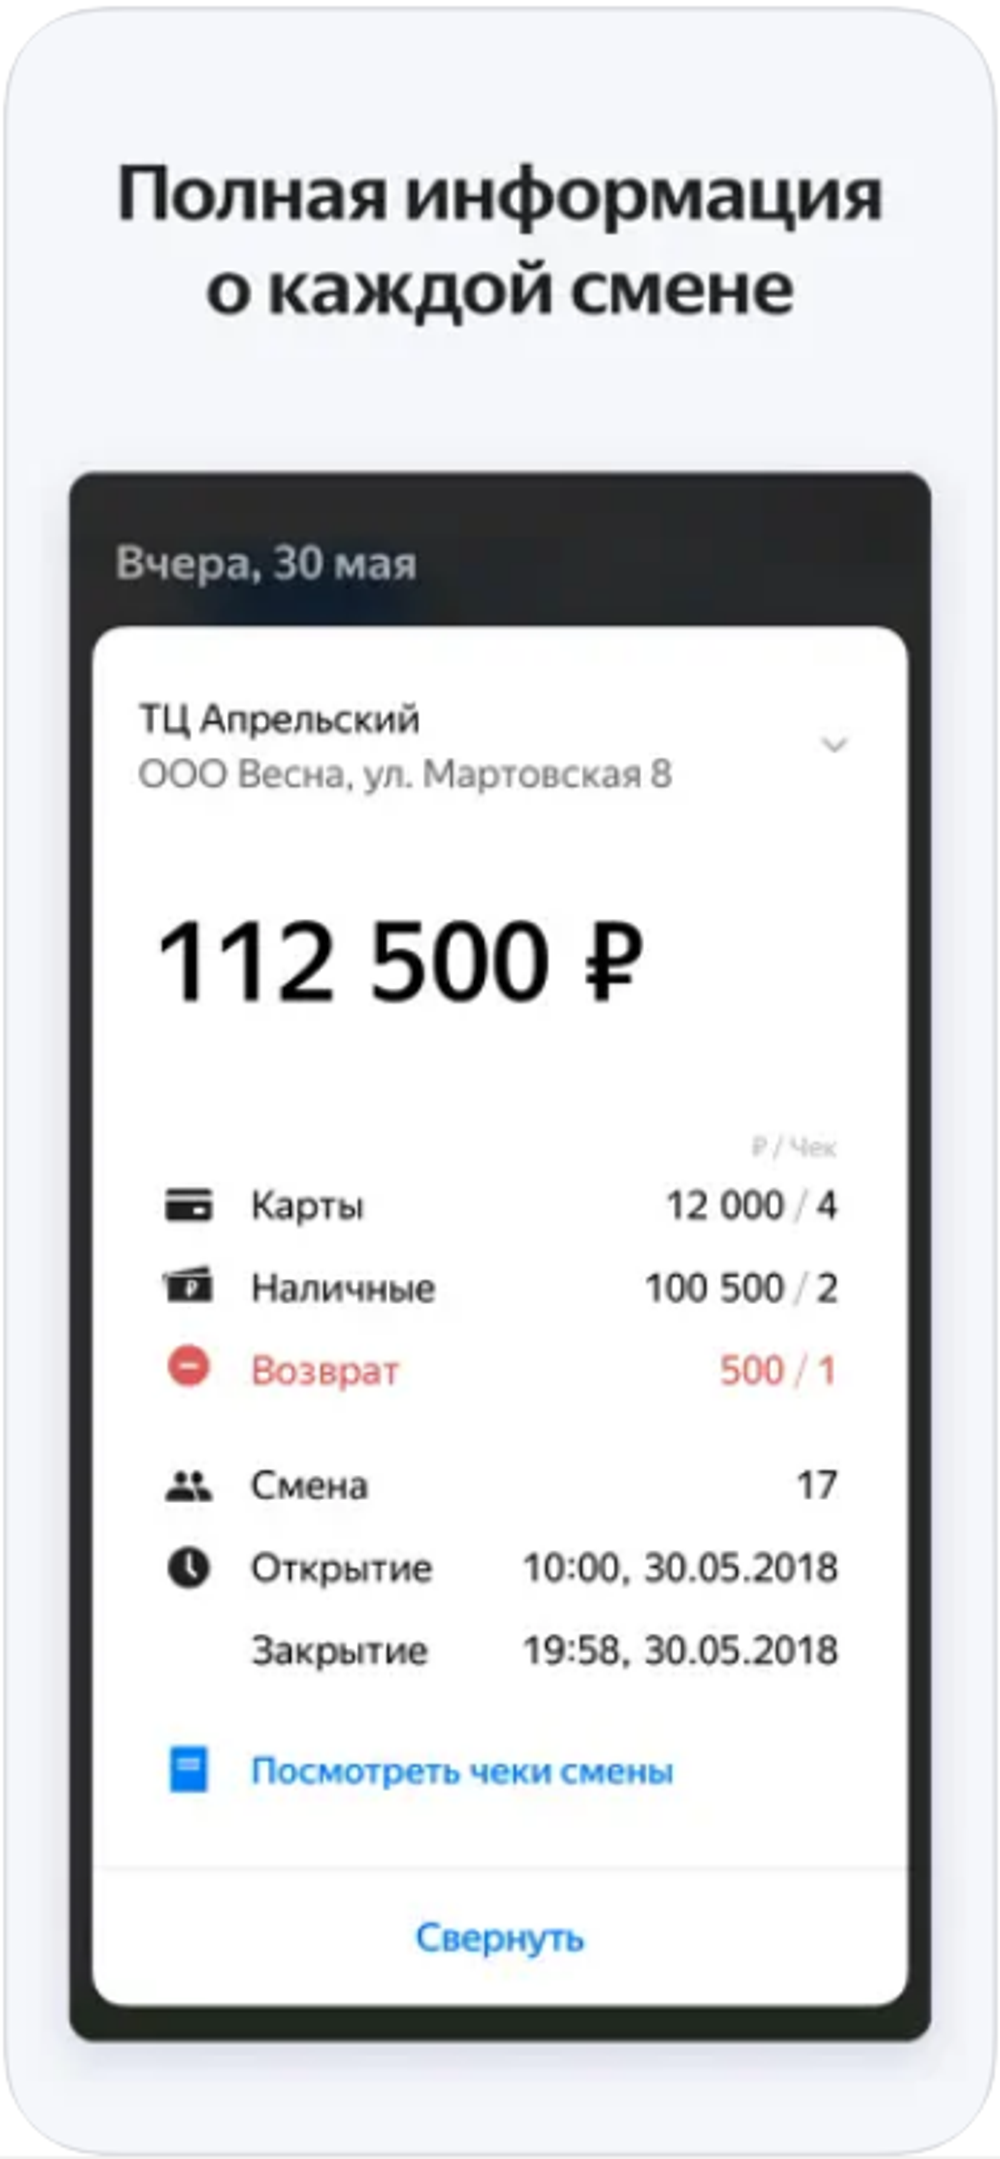 Код активации Яндекс ОФД на 15 месяцев